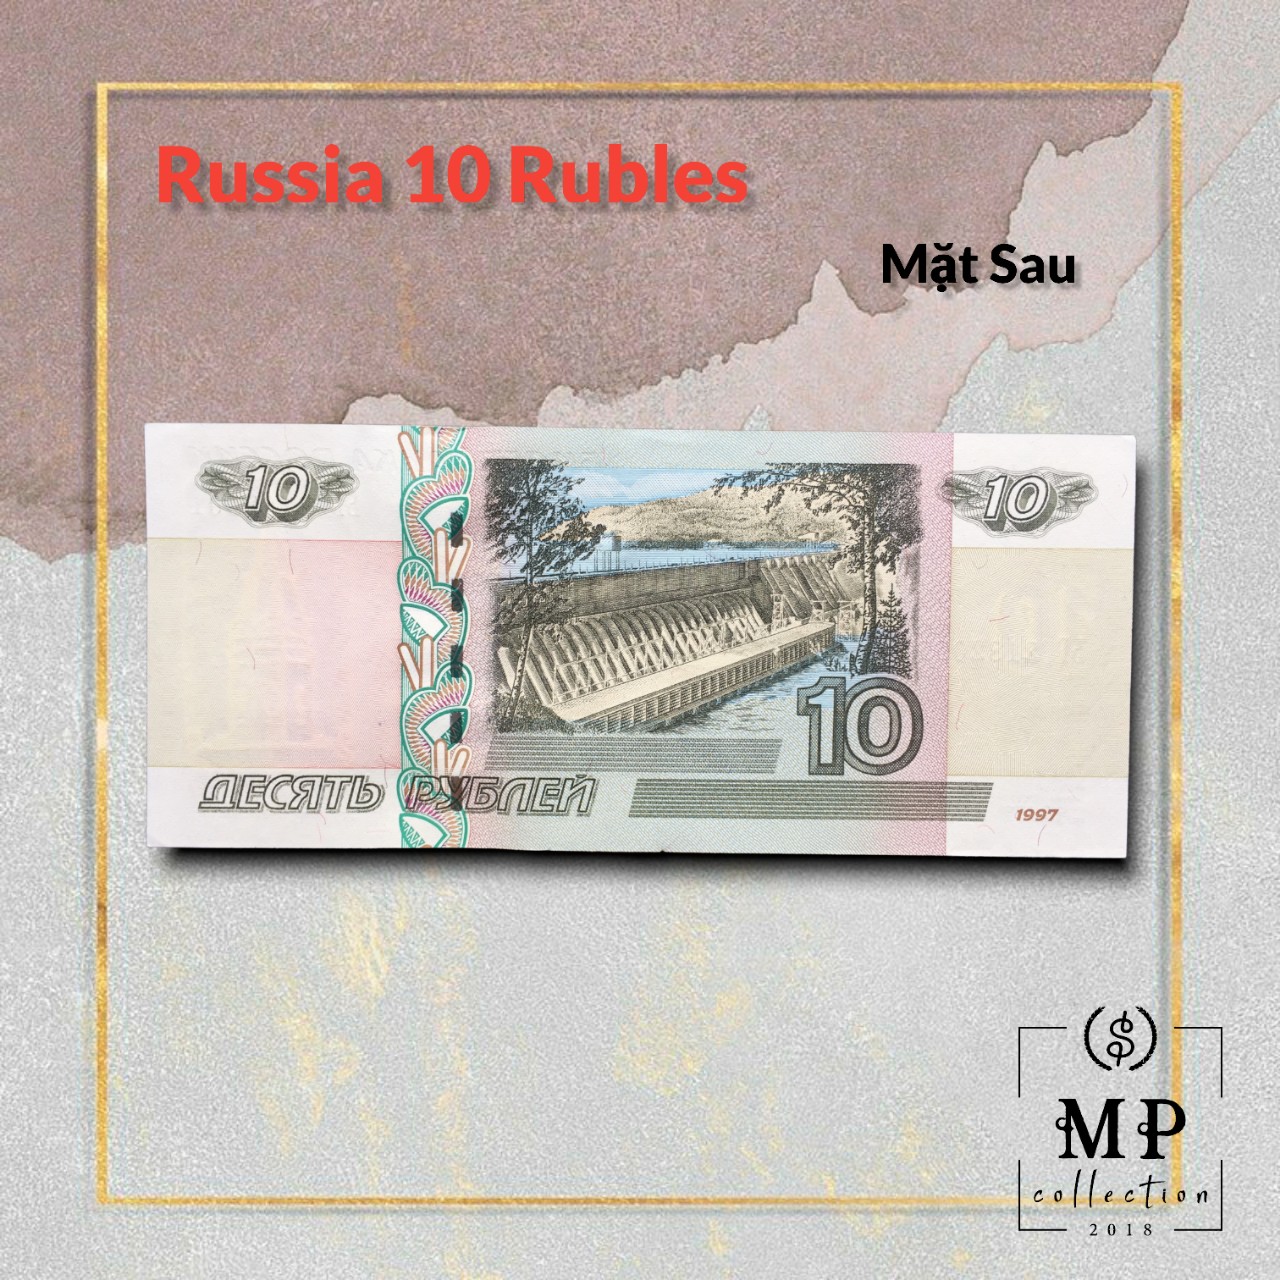 Tiền Liên bang Nga 10 rubles sưu tầm - Tiền mới keng 100% - Tặng túi nilon bảo quản.